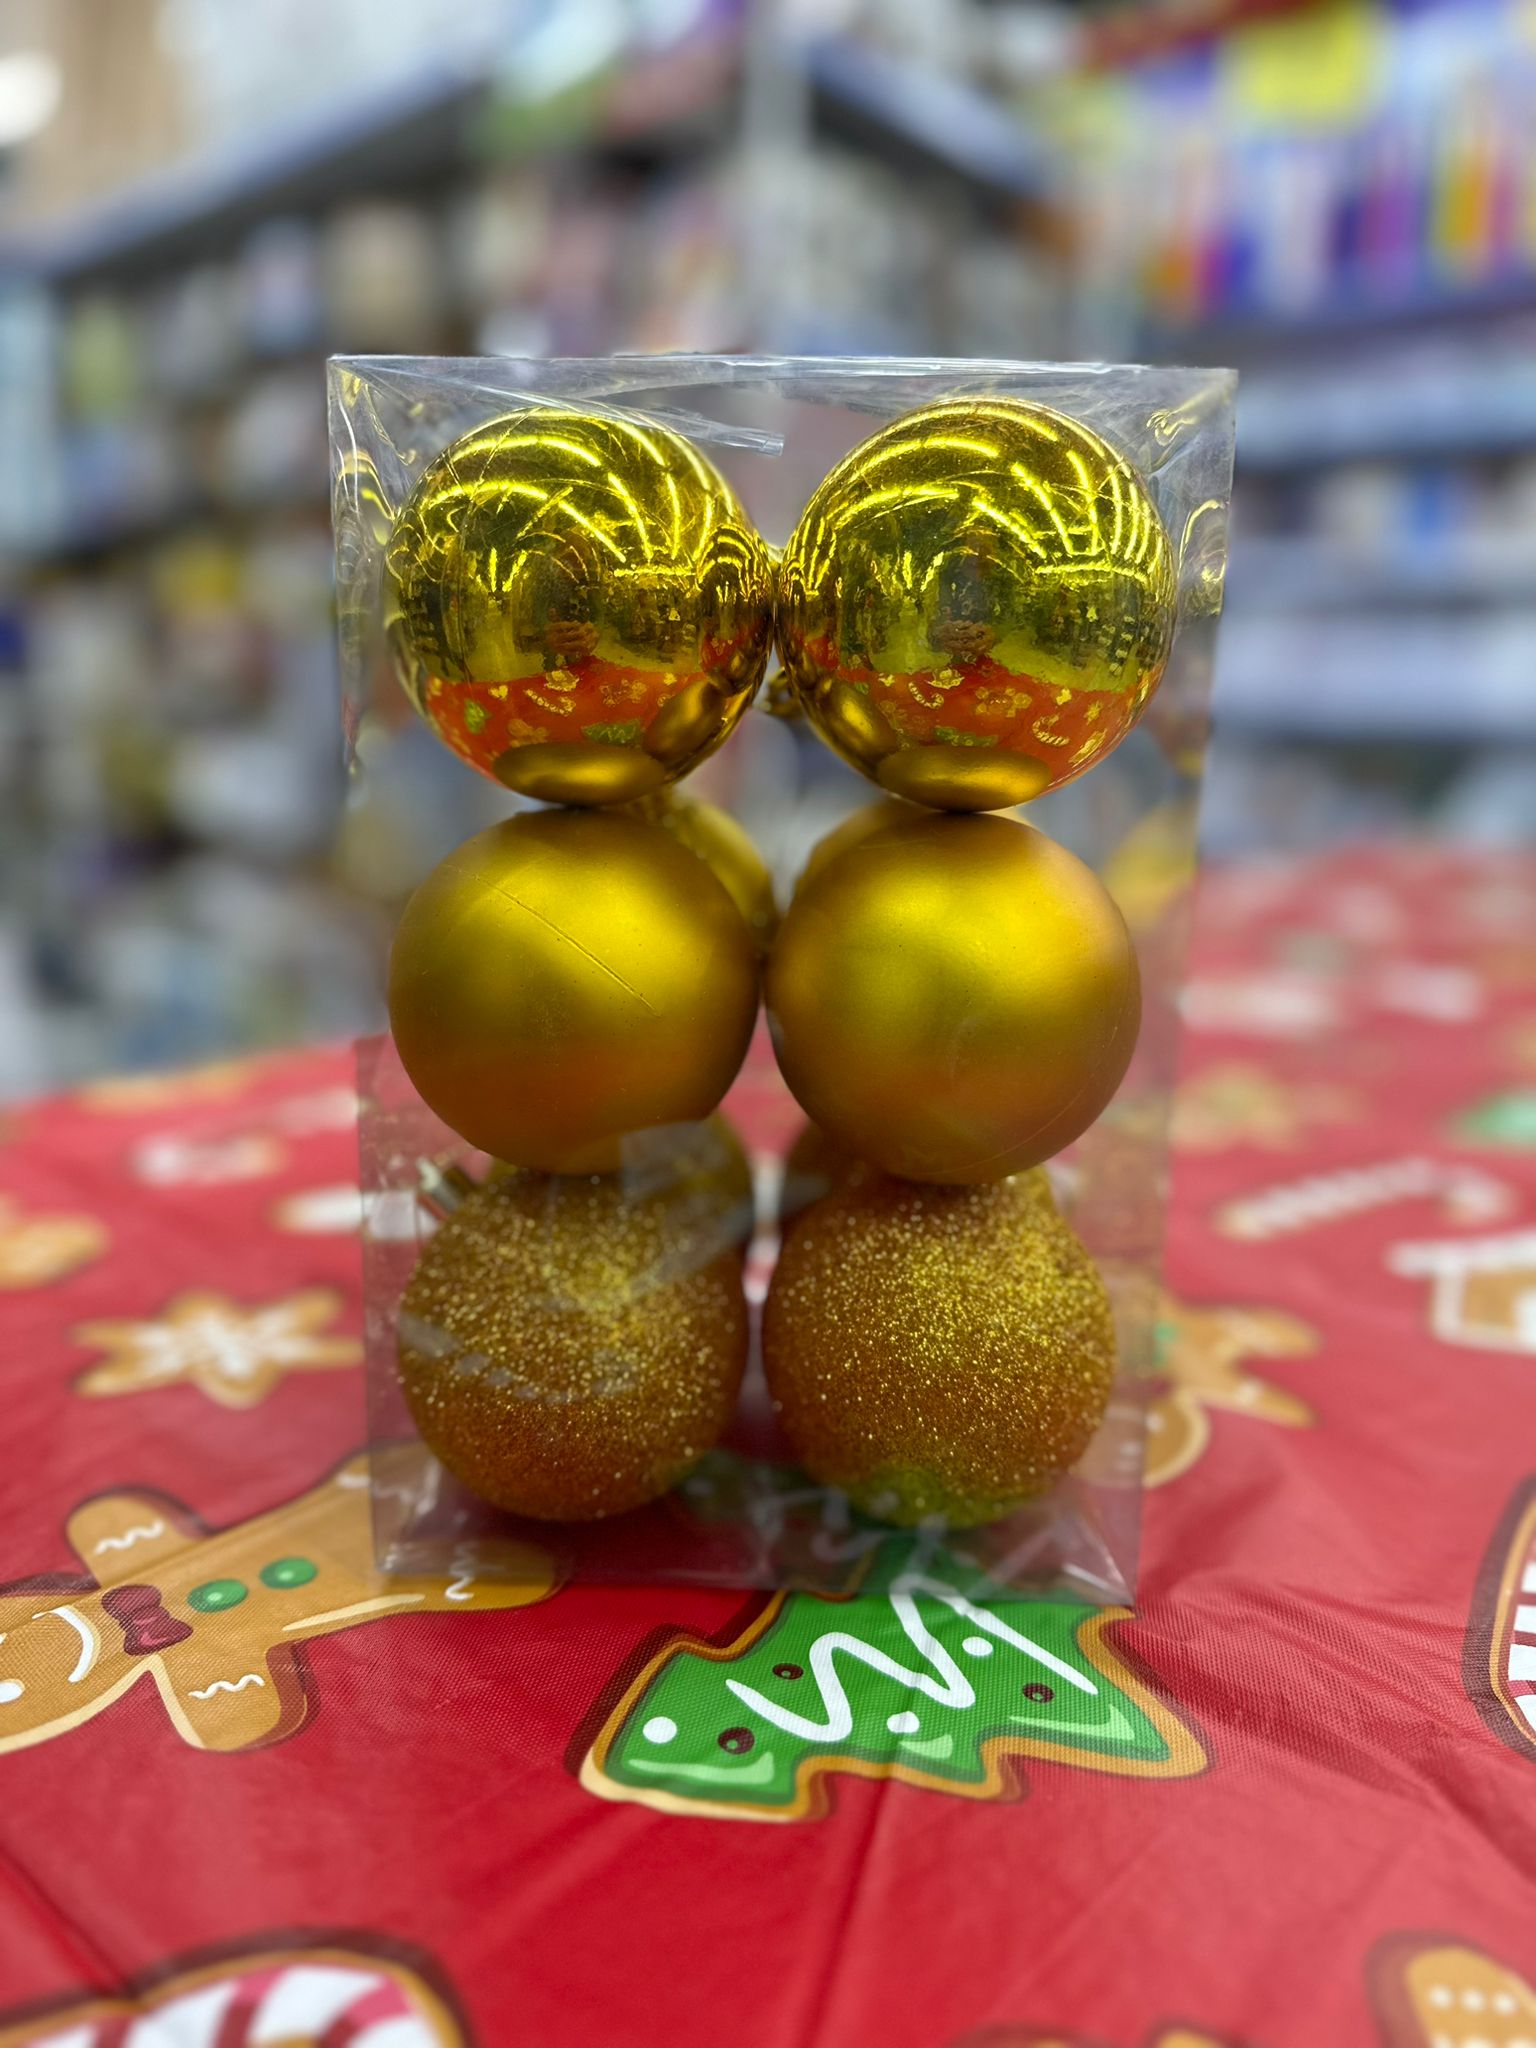  يافا: هدايا عيد الميلاد متوفرة الآن لدى زول ستوك وبأسعار مميزة 